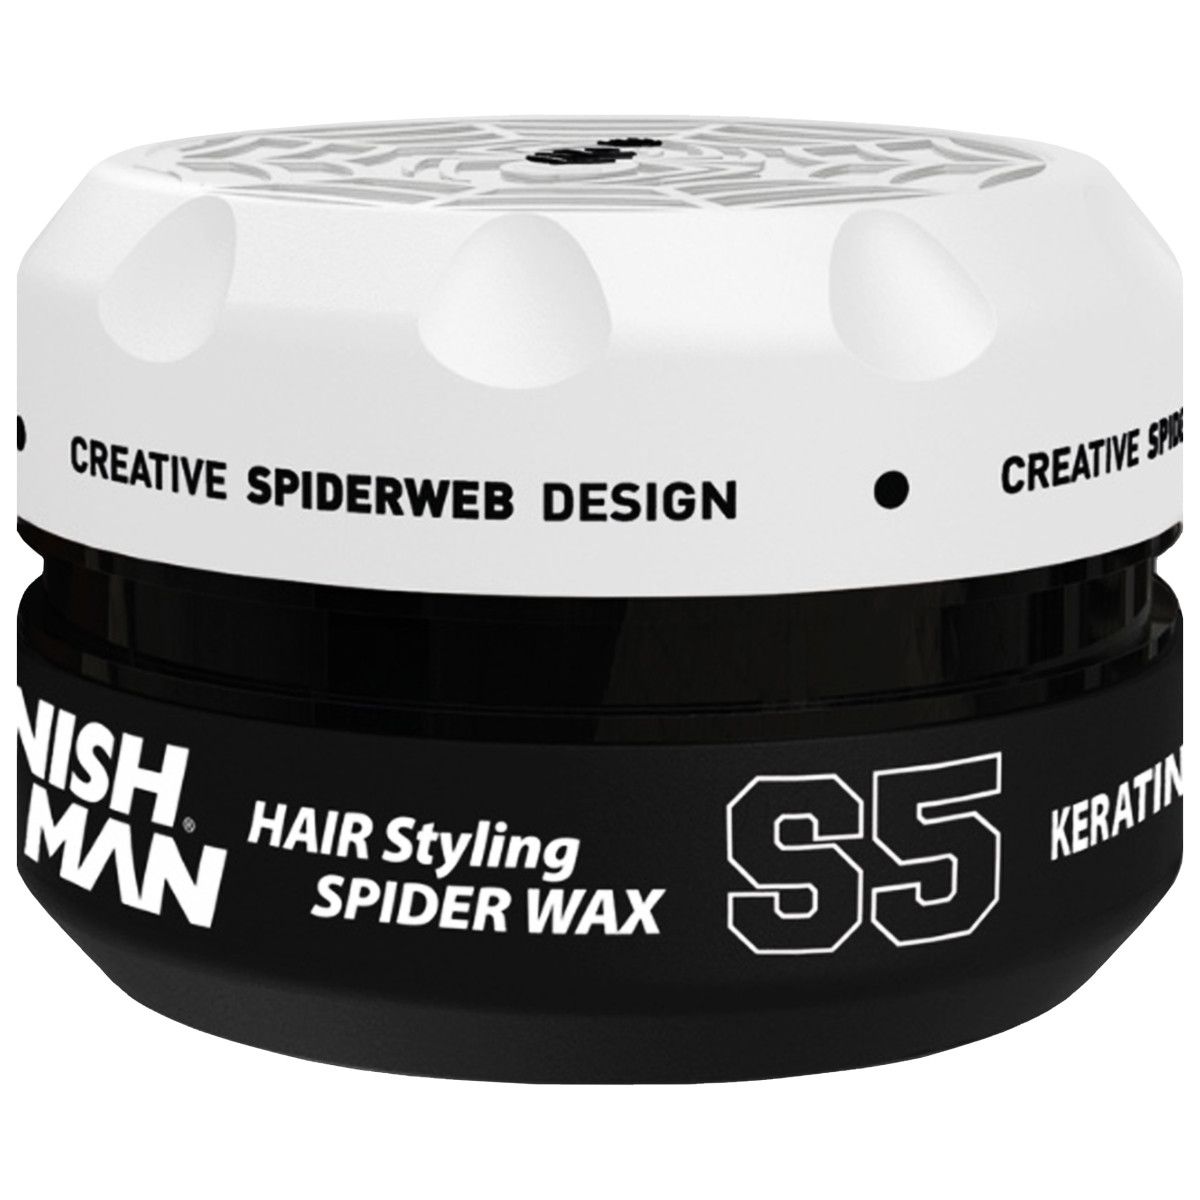 Nishman Hair Styling Spider Wax S5 - mocna pomada do włosów, 150ml